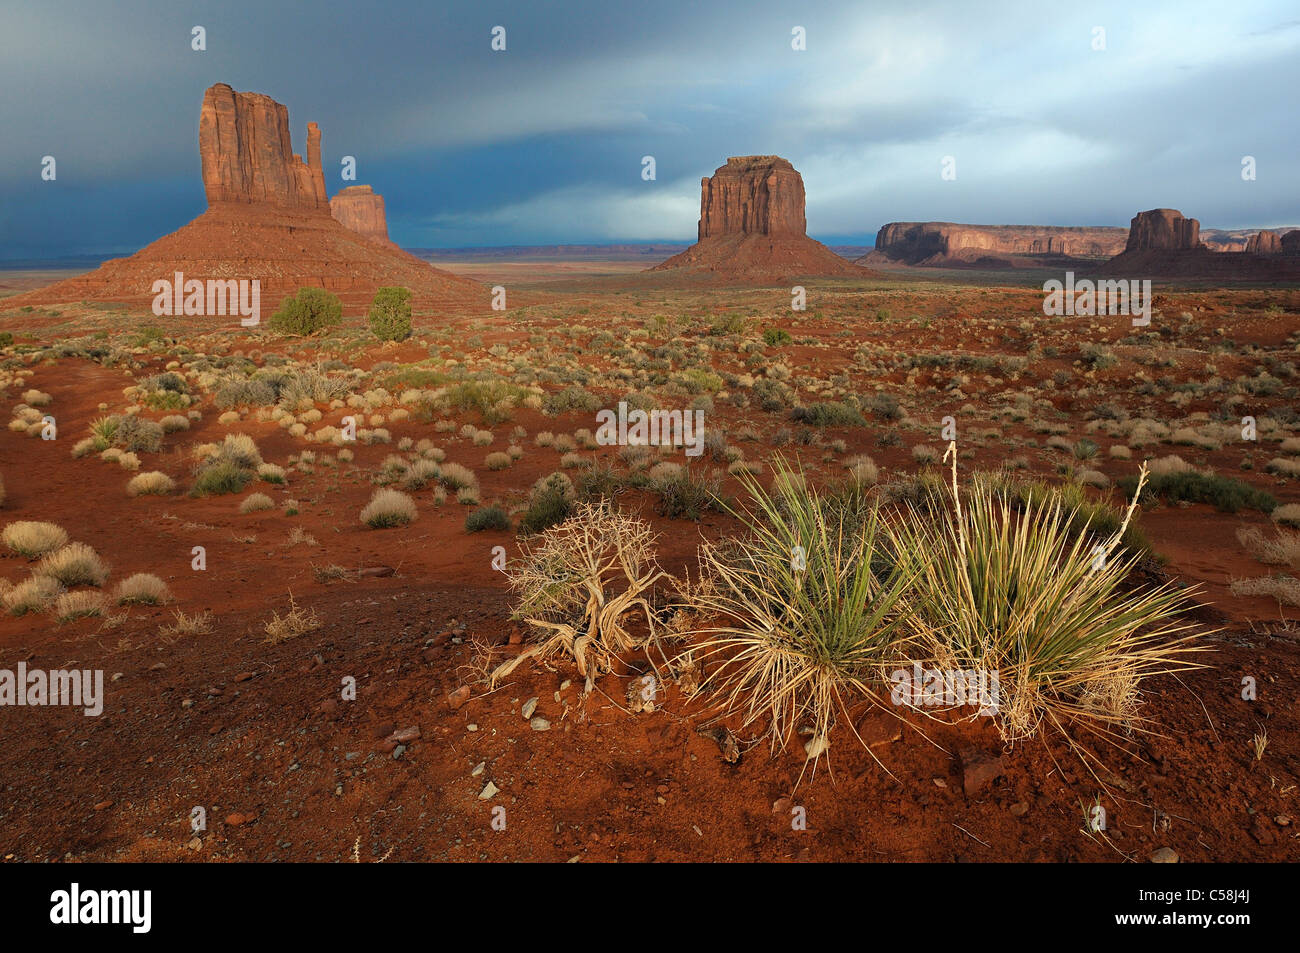 Monument Valley Navajo Tribal Park, Arizona, Utah, Stati Uniti d'America, Stati Uniti, America, rocce, albero, paesaggio Foto Stock